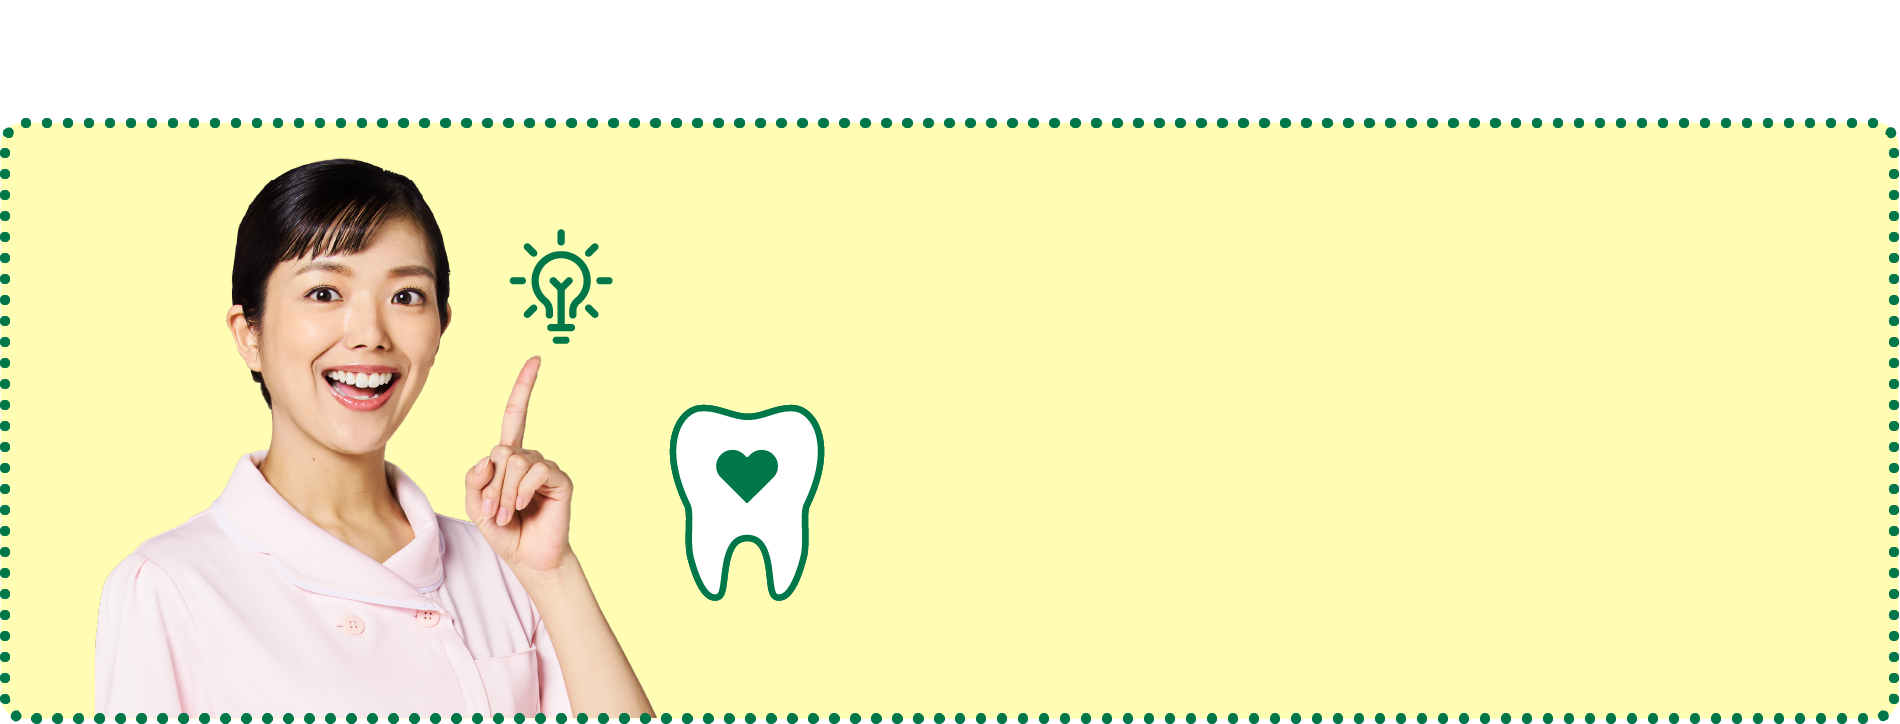 歯間ケアは歯周病対策に有効で、歯の命を守ることにつながります。だから、歯間クリーナーを使いましょう。